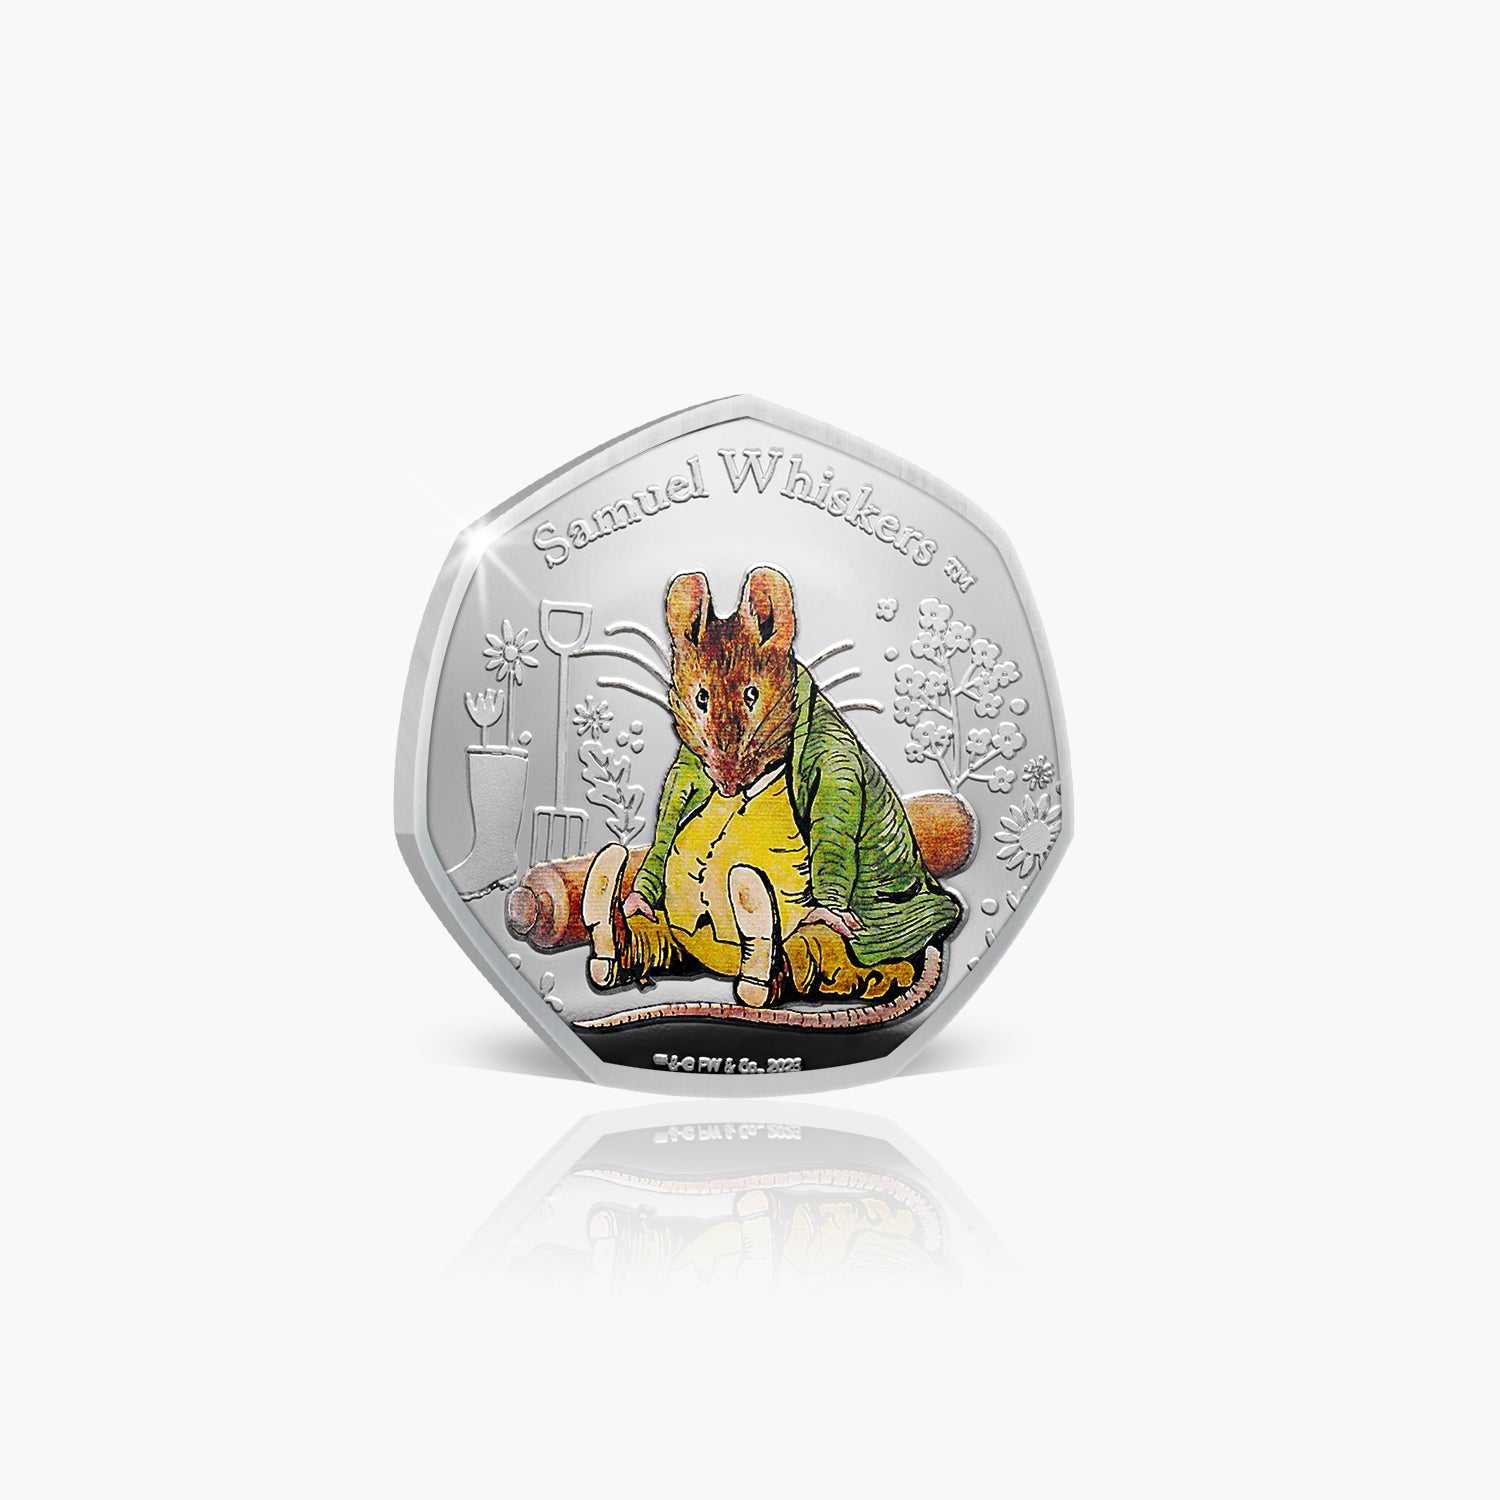 Collection de pièces Le monde de Peter Rabbit 2023 - Samuel Whiskers Coin